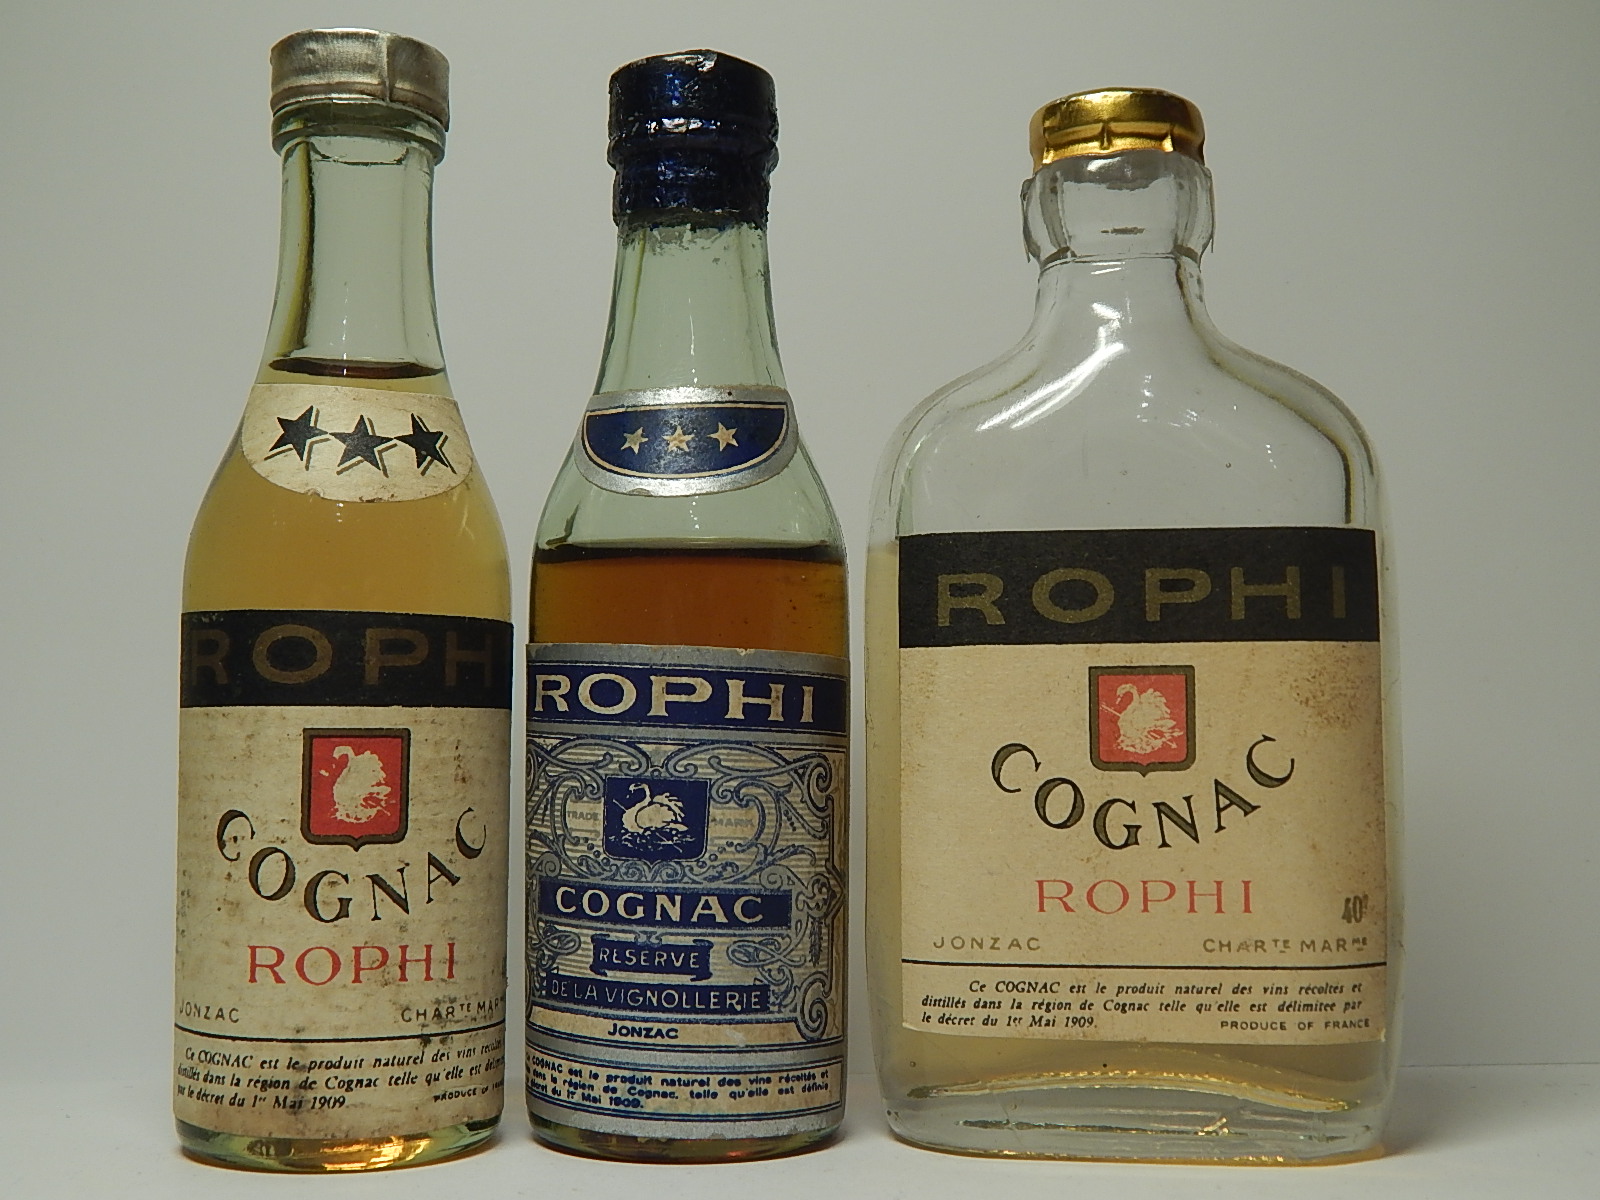 ROPHI *** Cognac